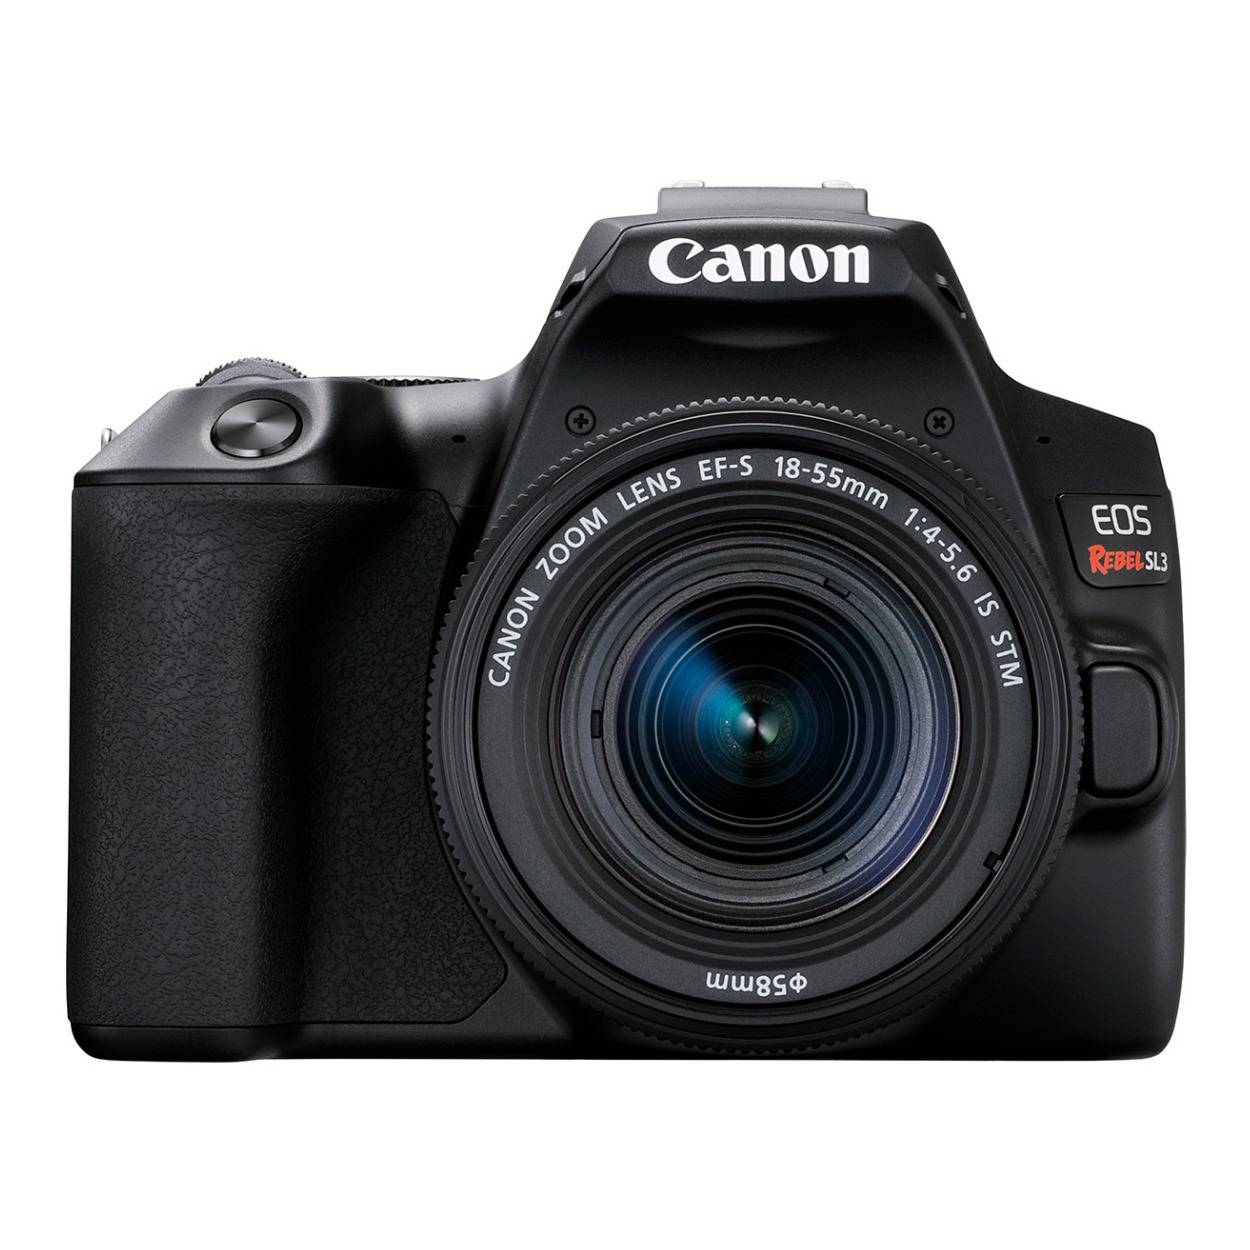 Canon EOS Rebel SL3 DSLR Camera with EF-S 18-55mm f/4-5.6 IS STM Lens (Black)